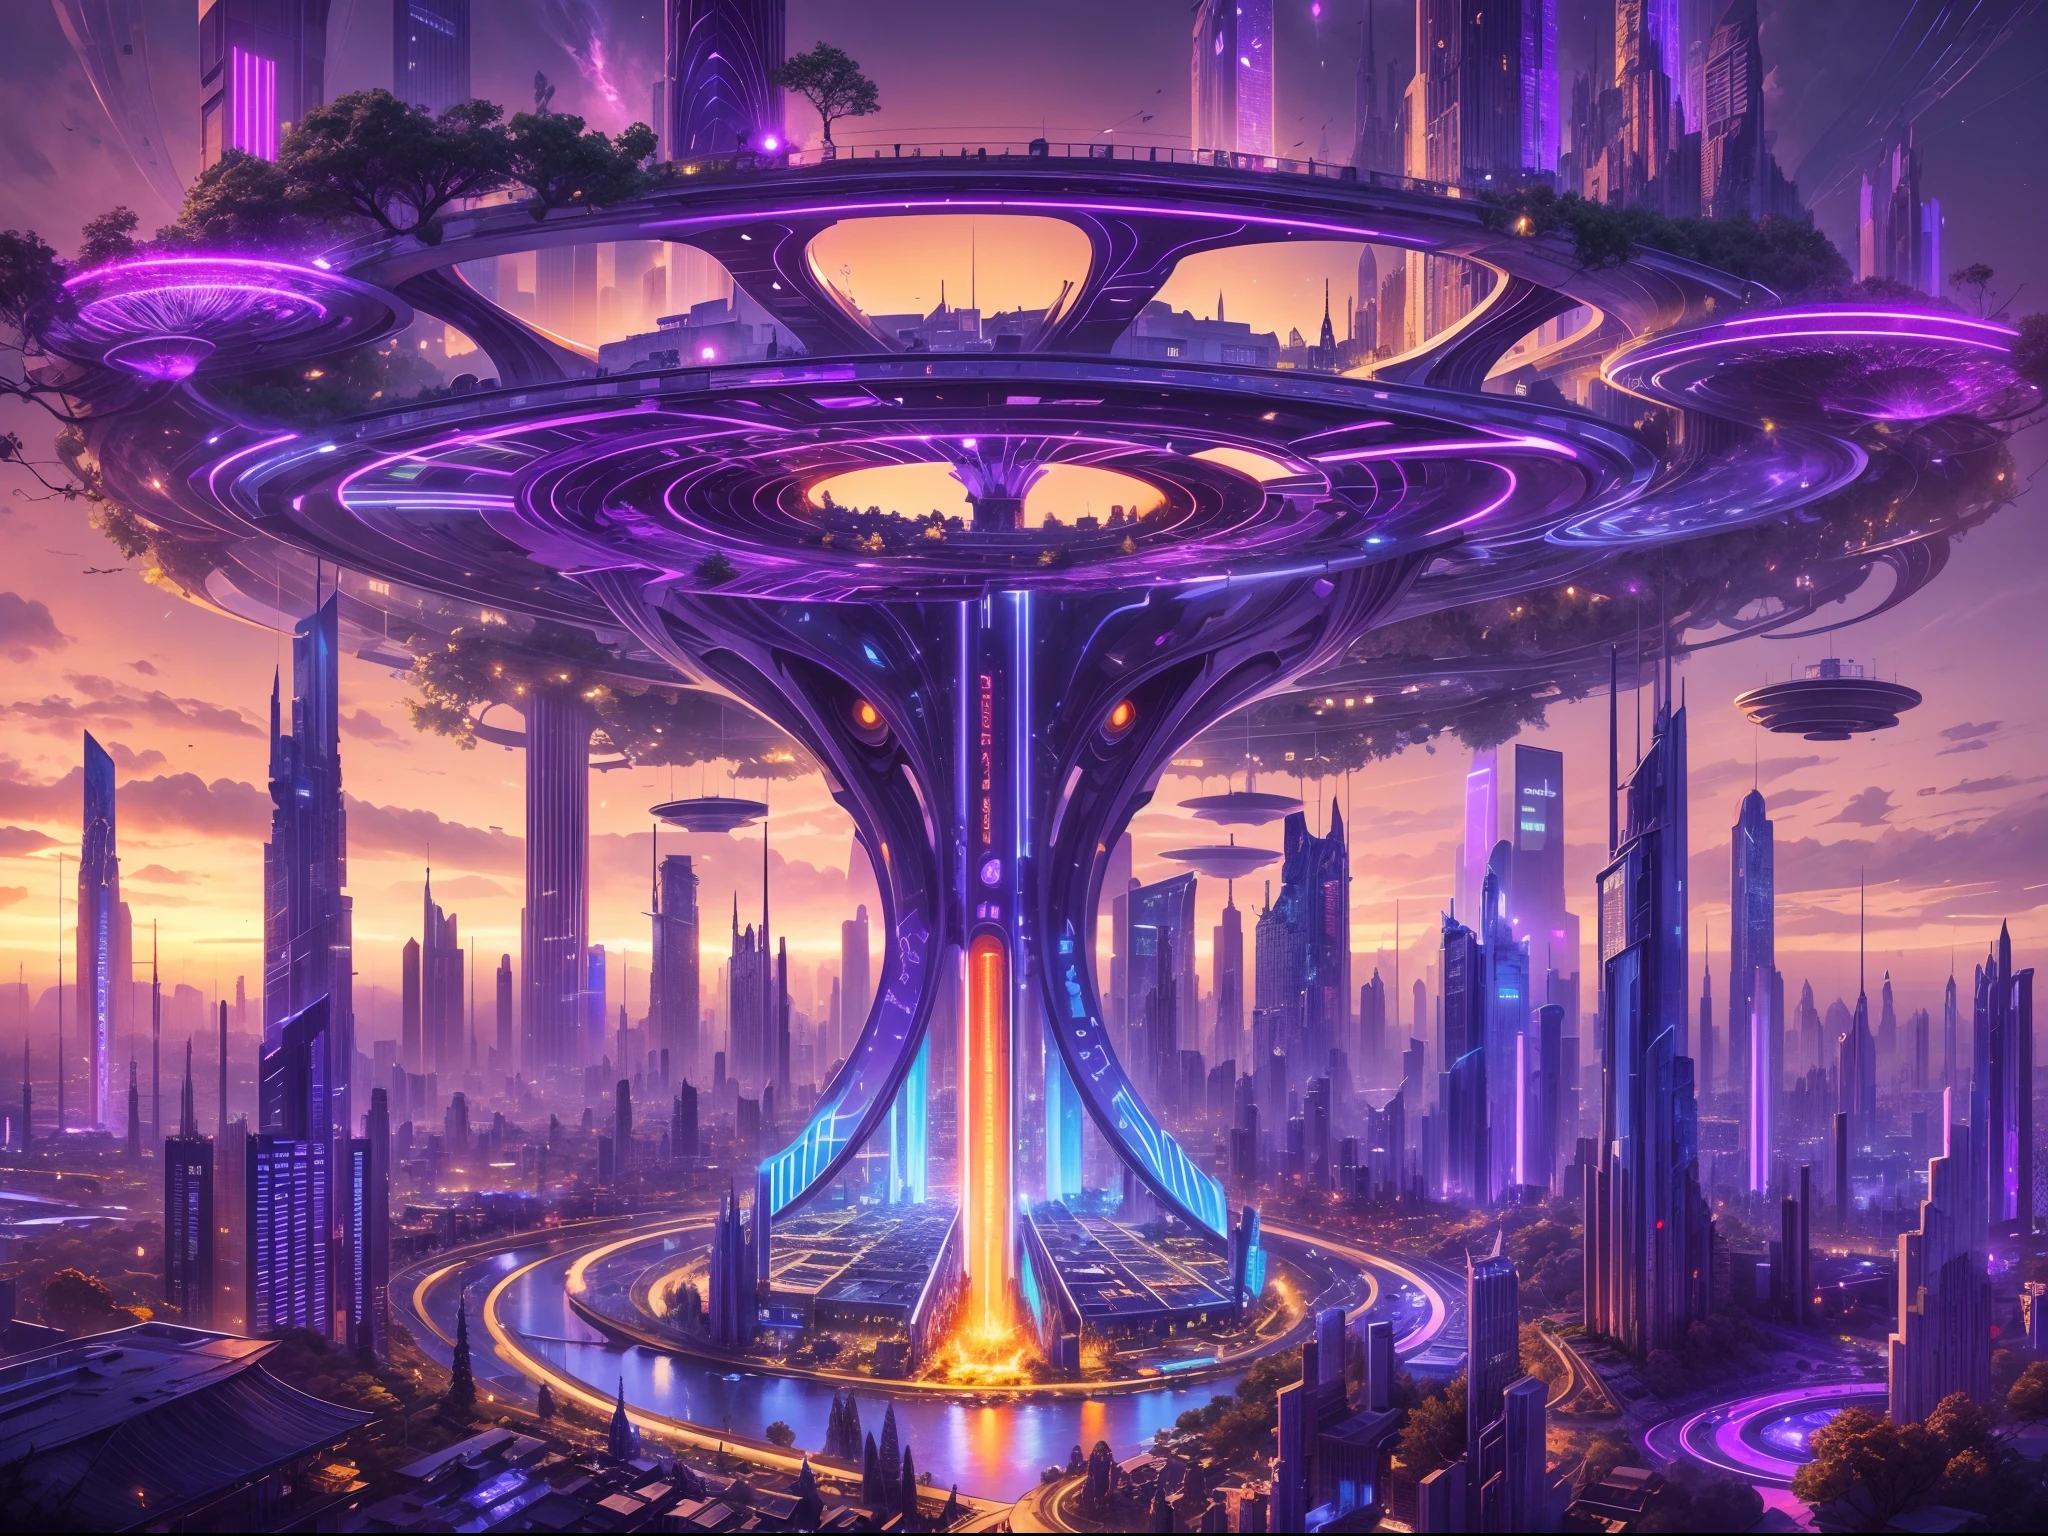 超凡脱俗的城市形象, a 未来派 city, 一根巨大的高科技柱子刺破天空, 柱身上无数根粗长的机械树枝, detailed 未来派 houses on each branch, 广角, ultra 广角, 捕捉所有独特的城市, 柱子和树枝上闪烁的紫色和蓝色光芒, 各分公司通过高科技桥梁连接在一起, 未来派, 夜间, 照亮夜空, 树枝连接在一起，形成一个环绕大柱子的圆形结构,